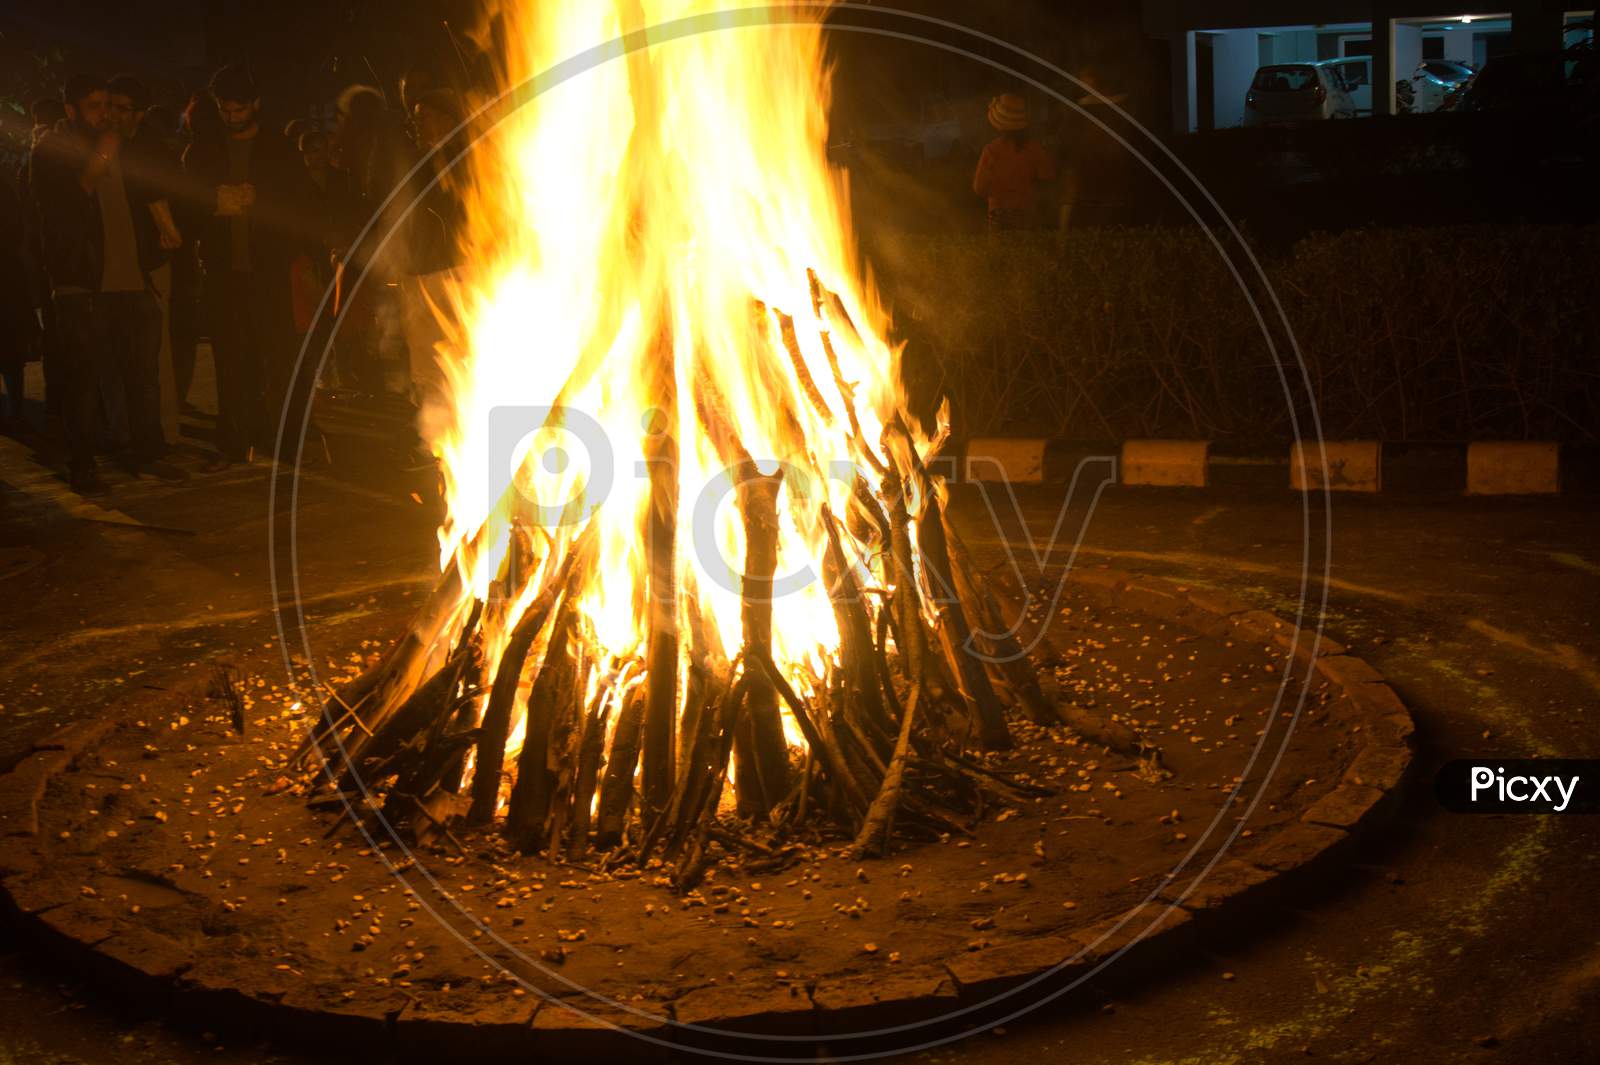 Giant Bon Fire Lit For The Festival Of Lohri